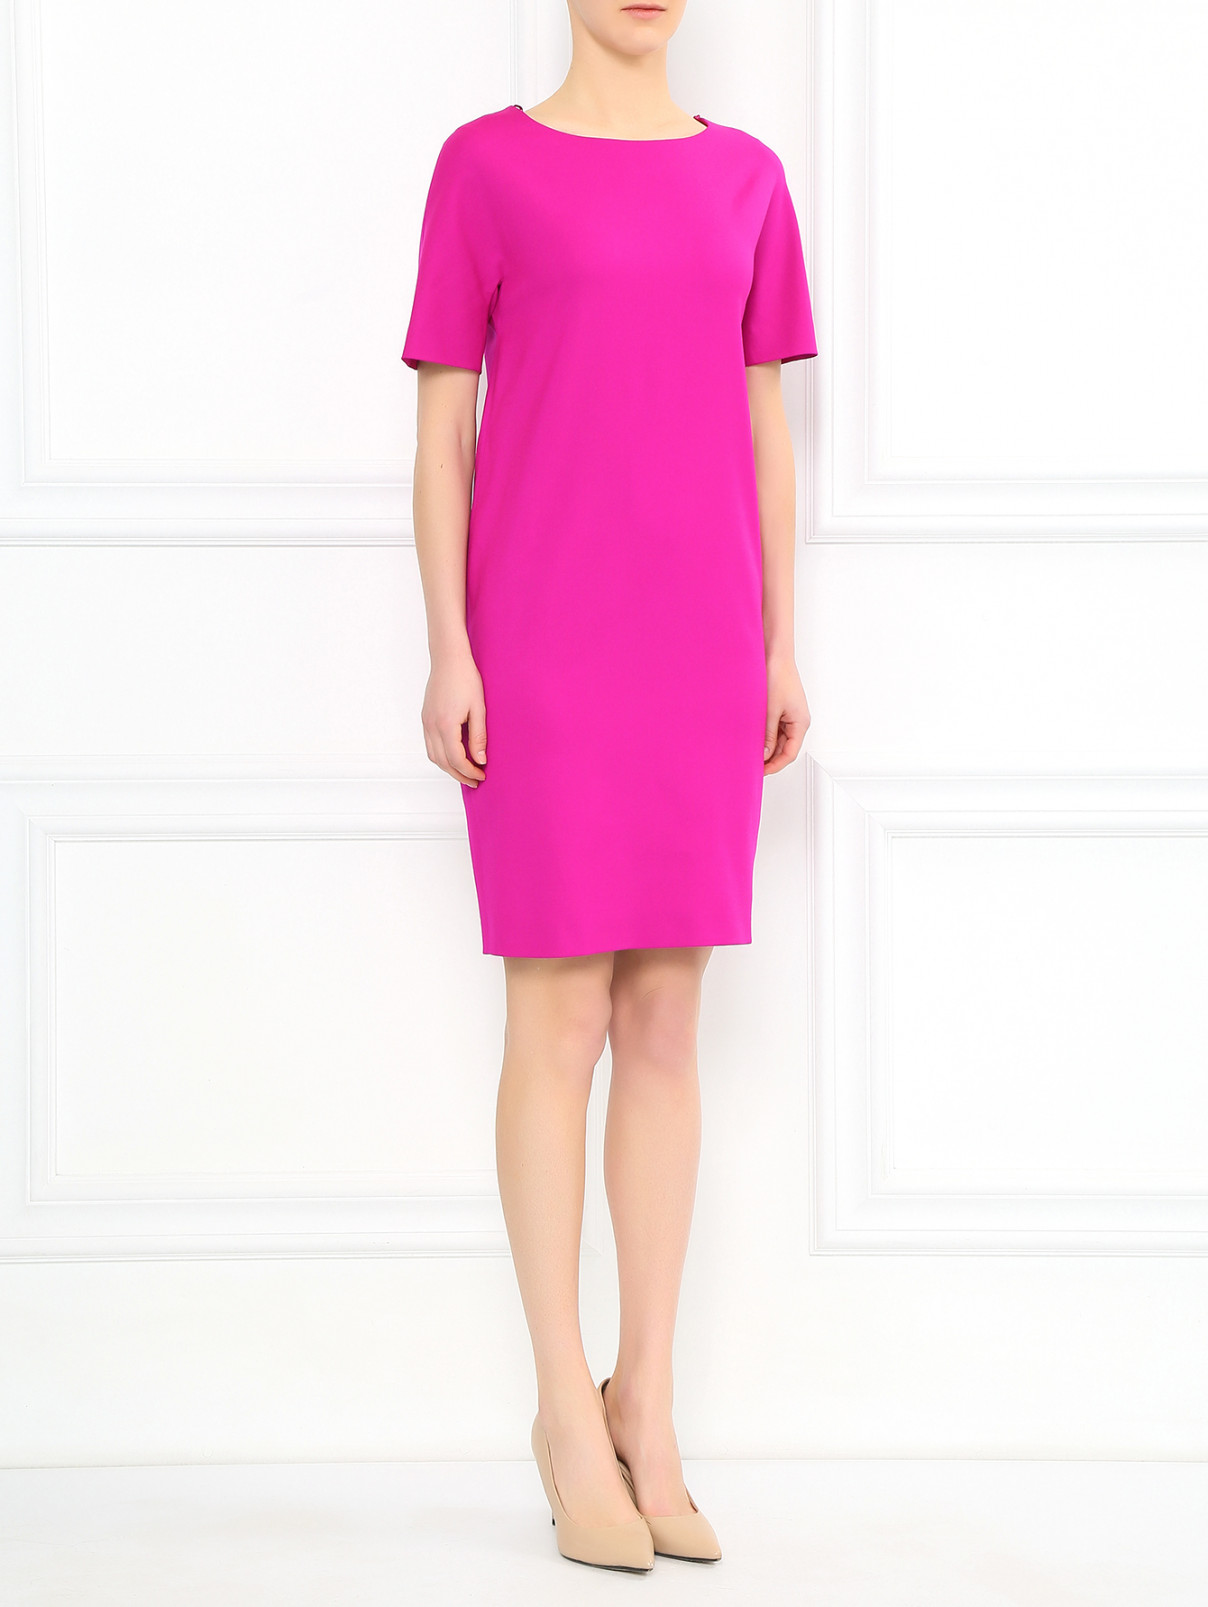 Платье из шерсти свободного кроя Moschino Boutique  –  Модель Общий вид  – Цвет:  Розовый